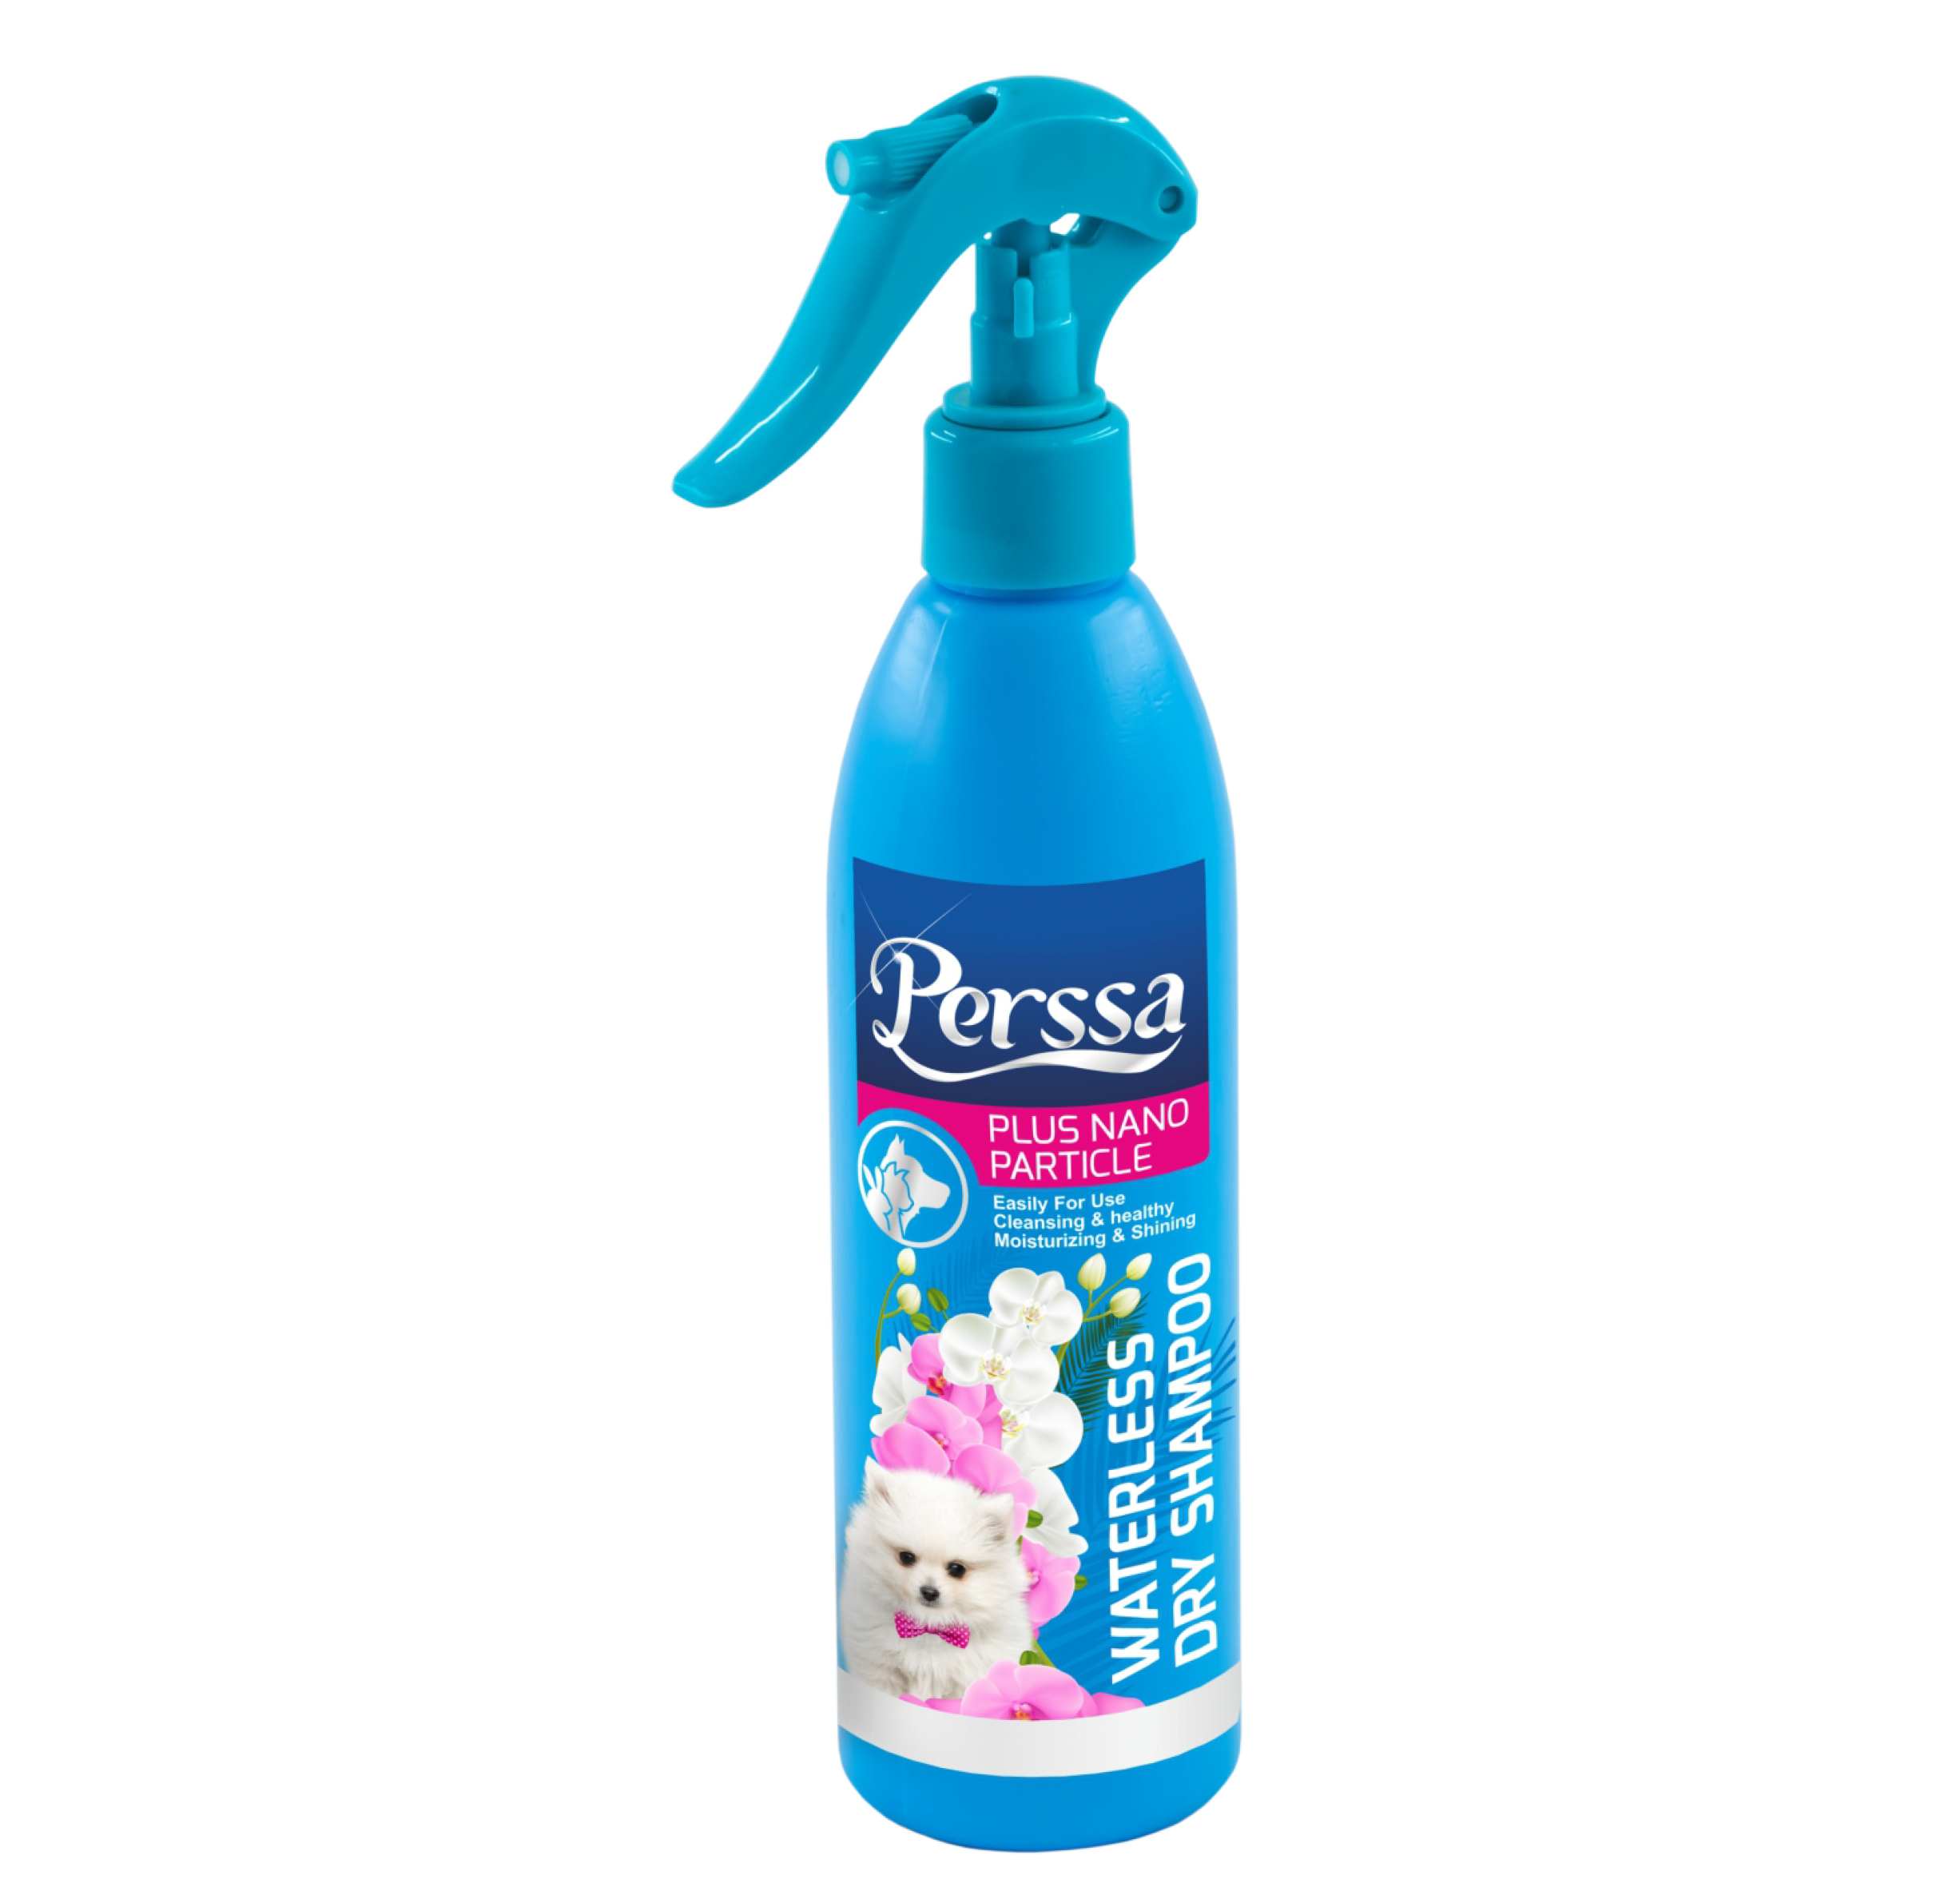 dry shampoo spray